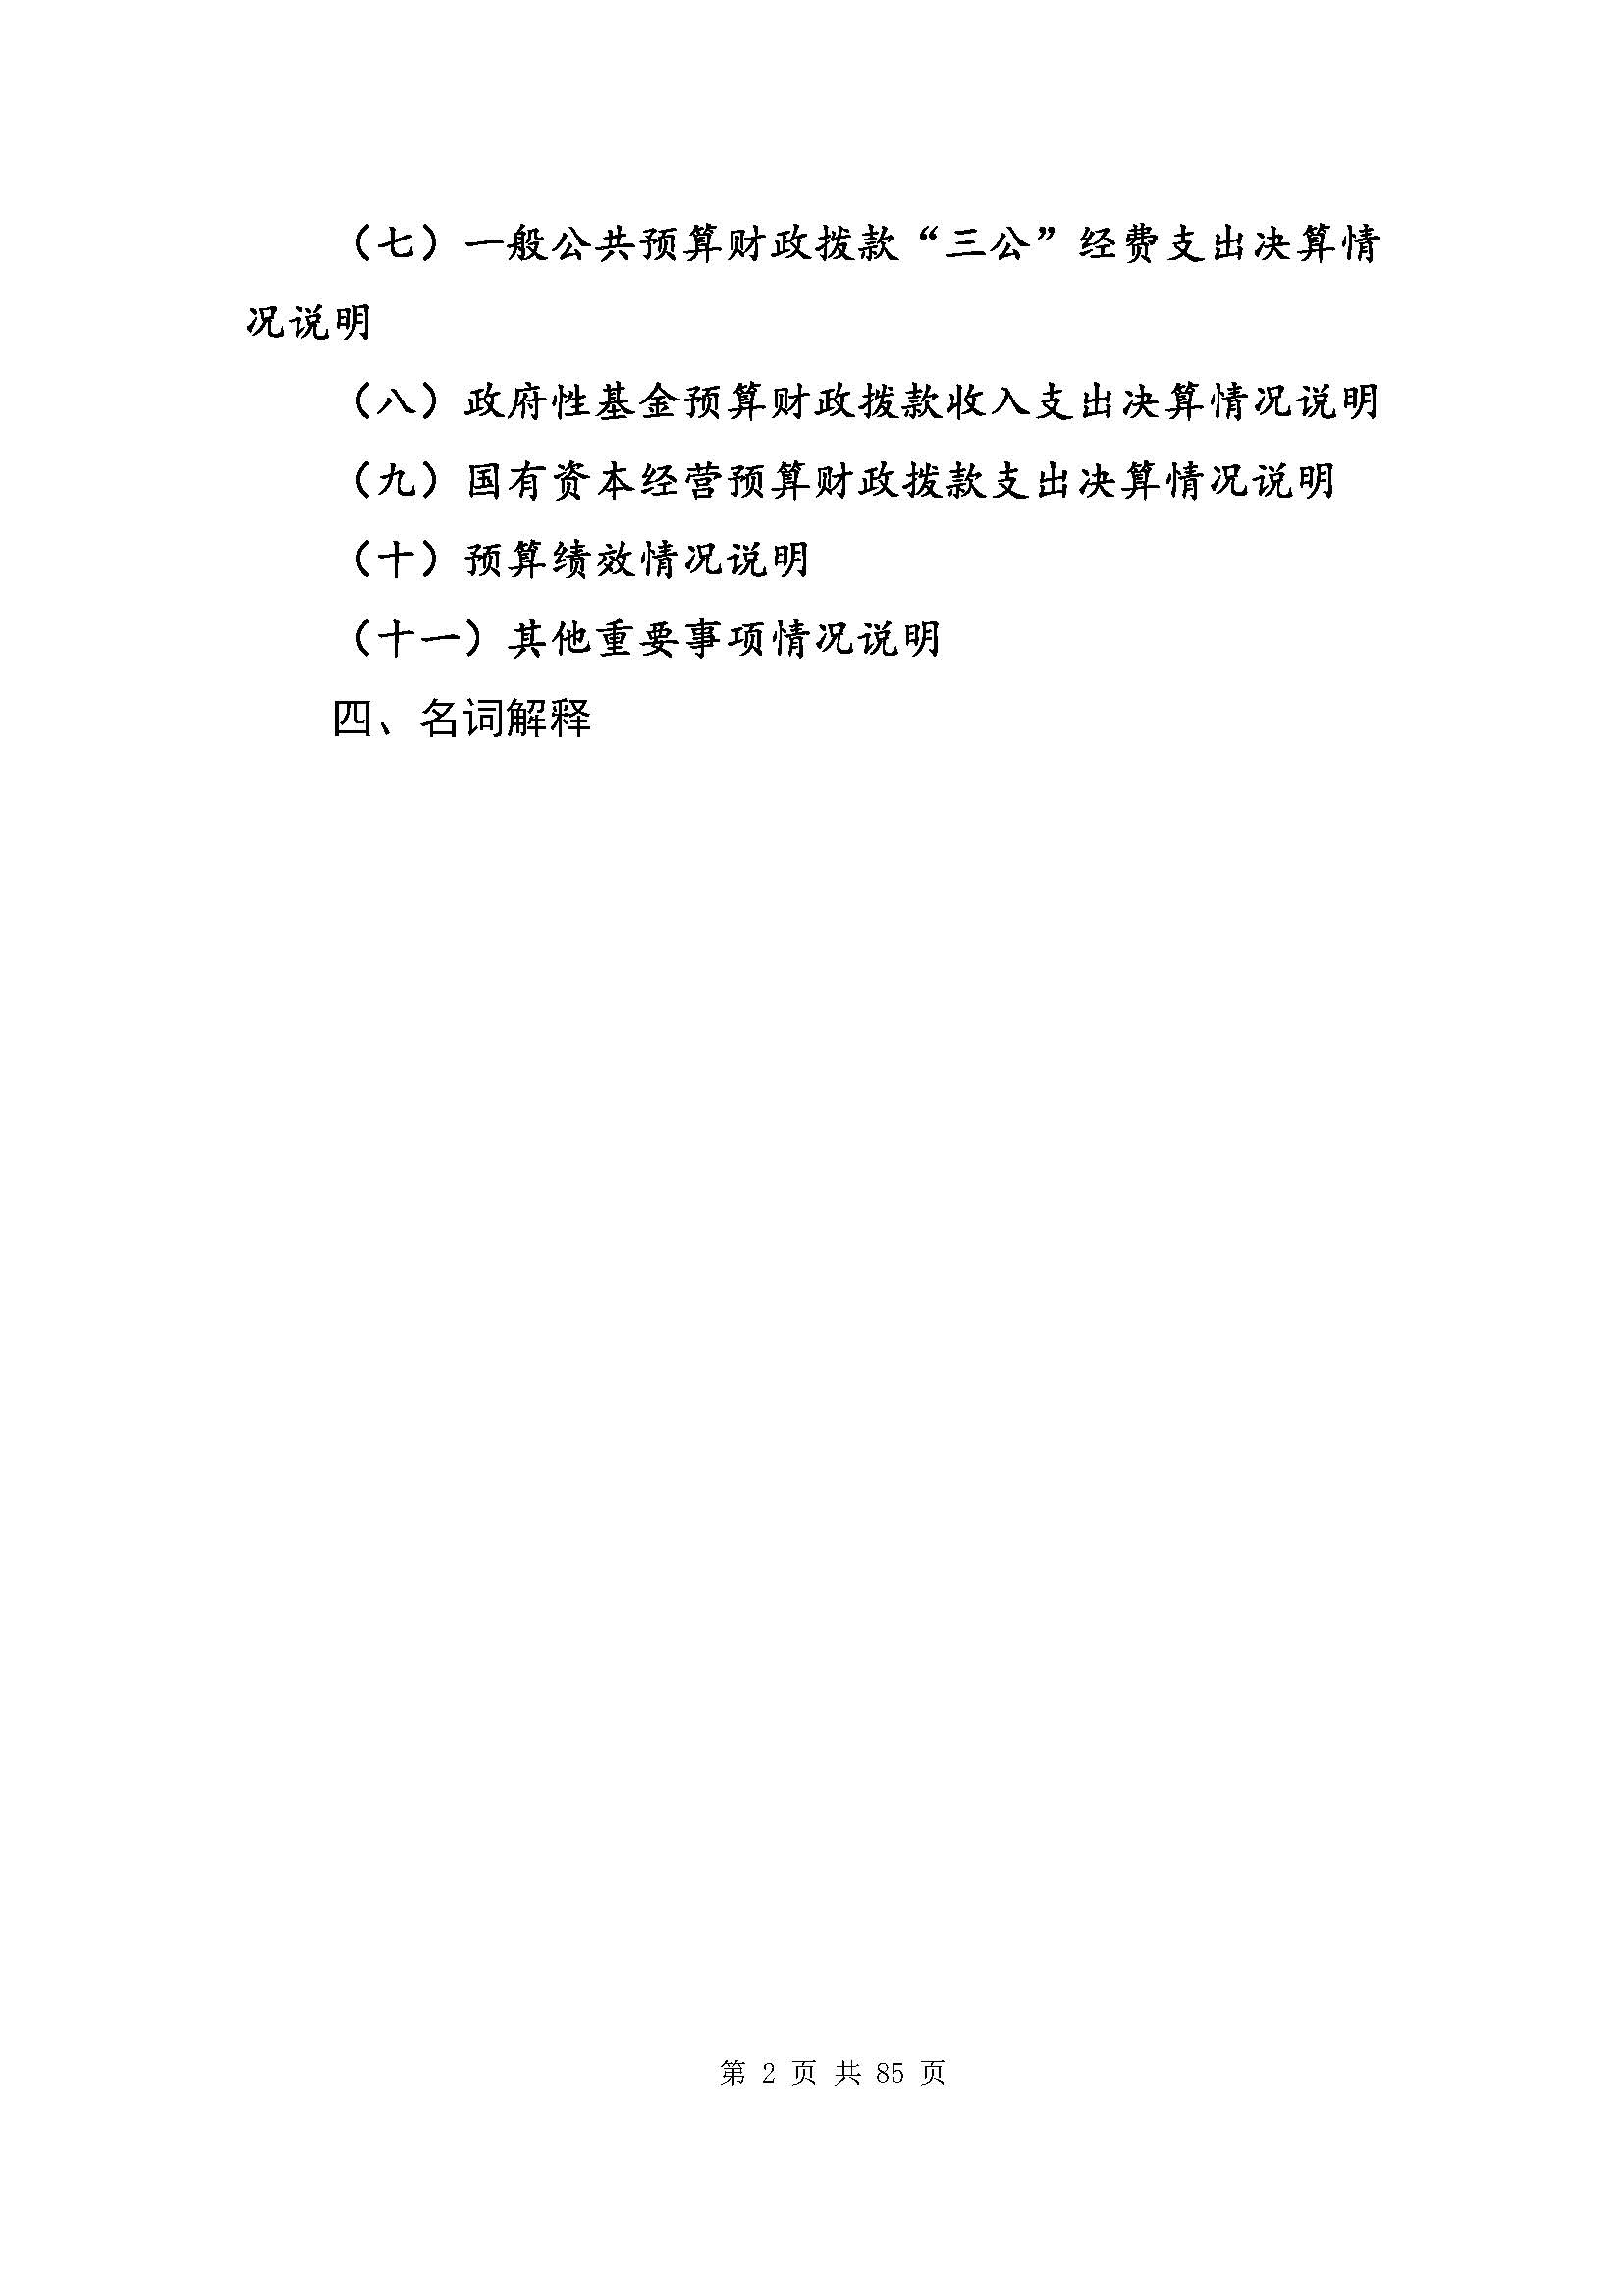 深圳市招生考试办公室2020年度部门决算_页面_03.jpg